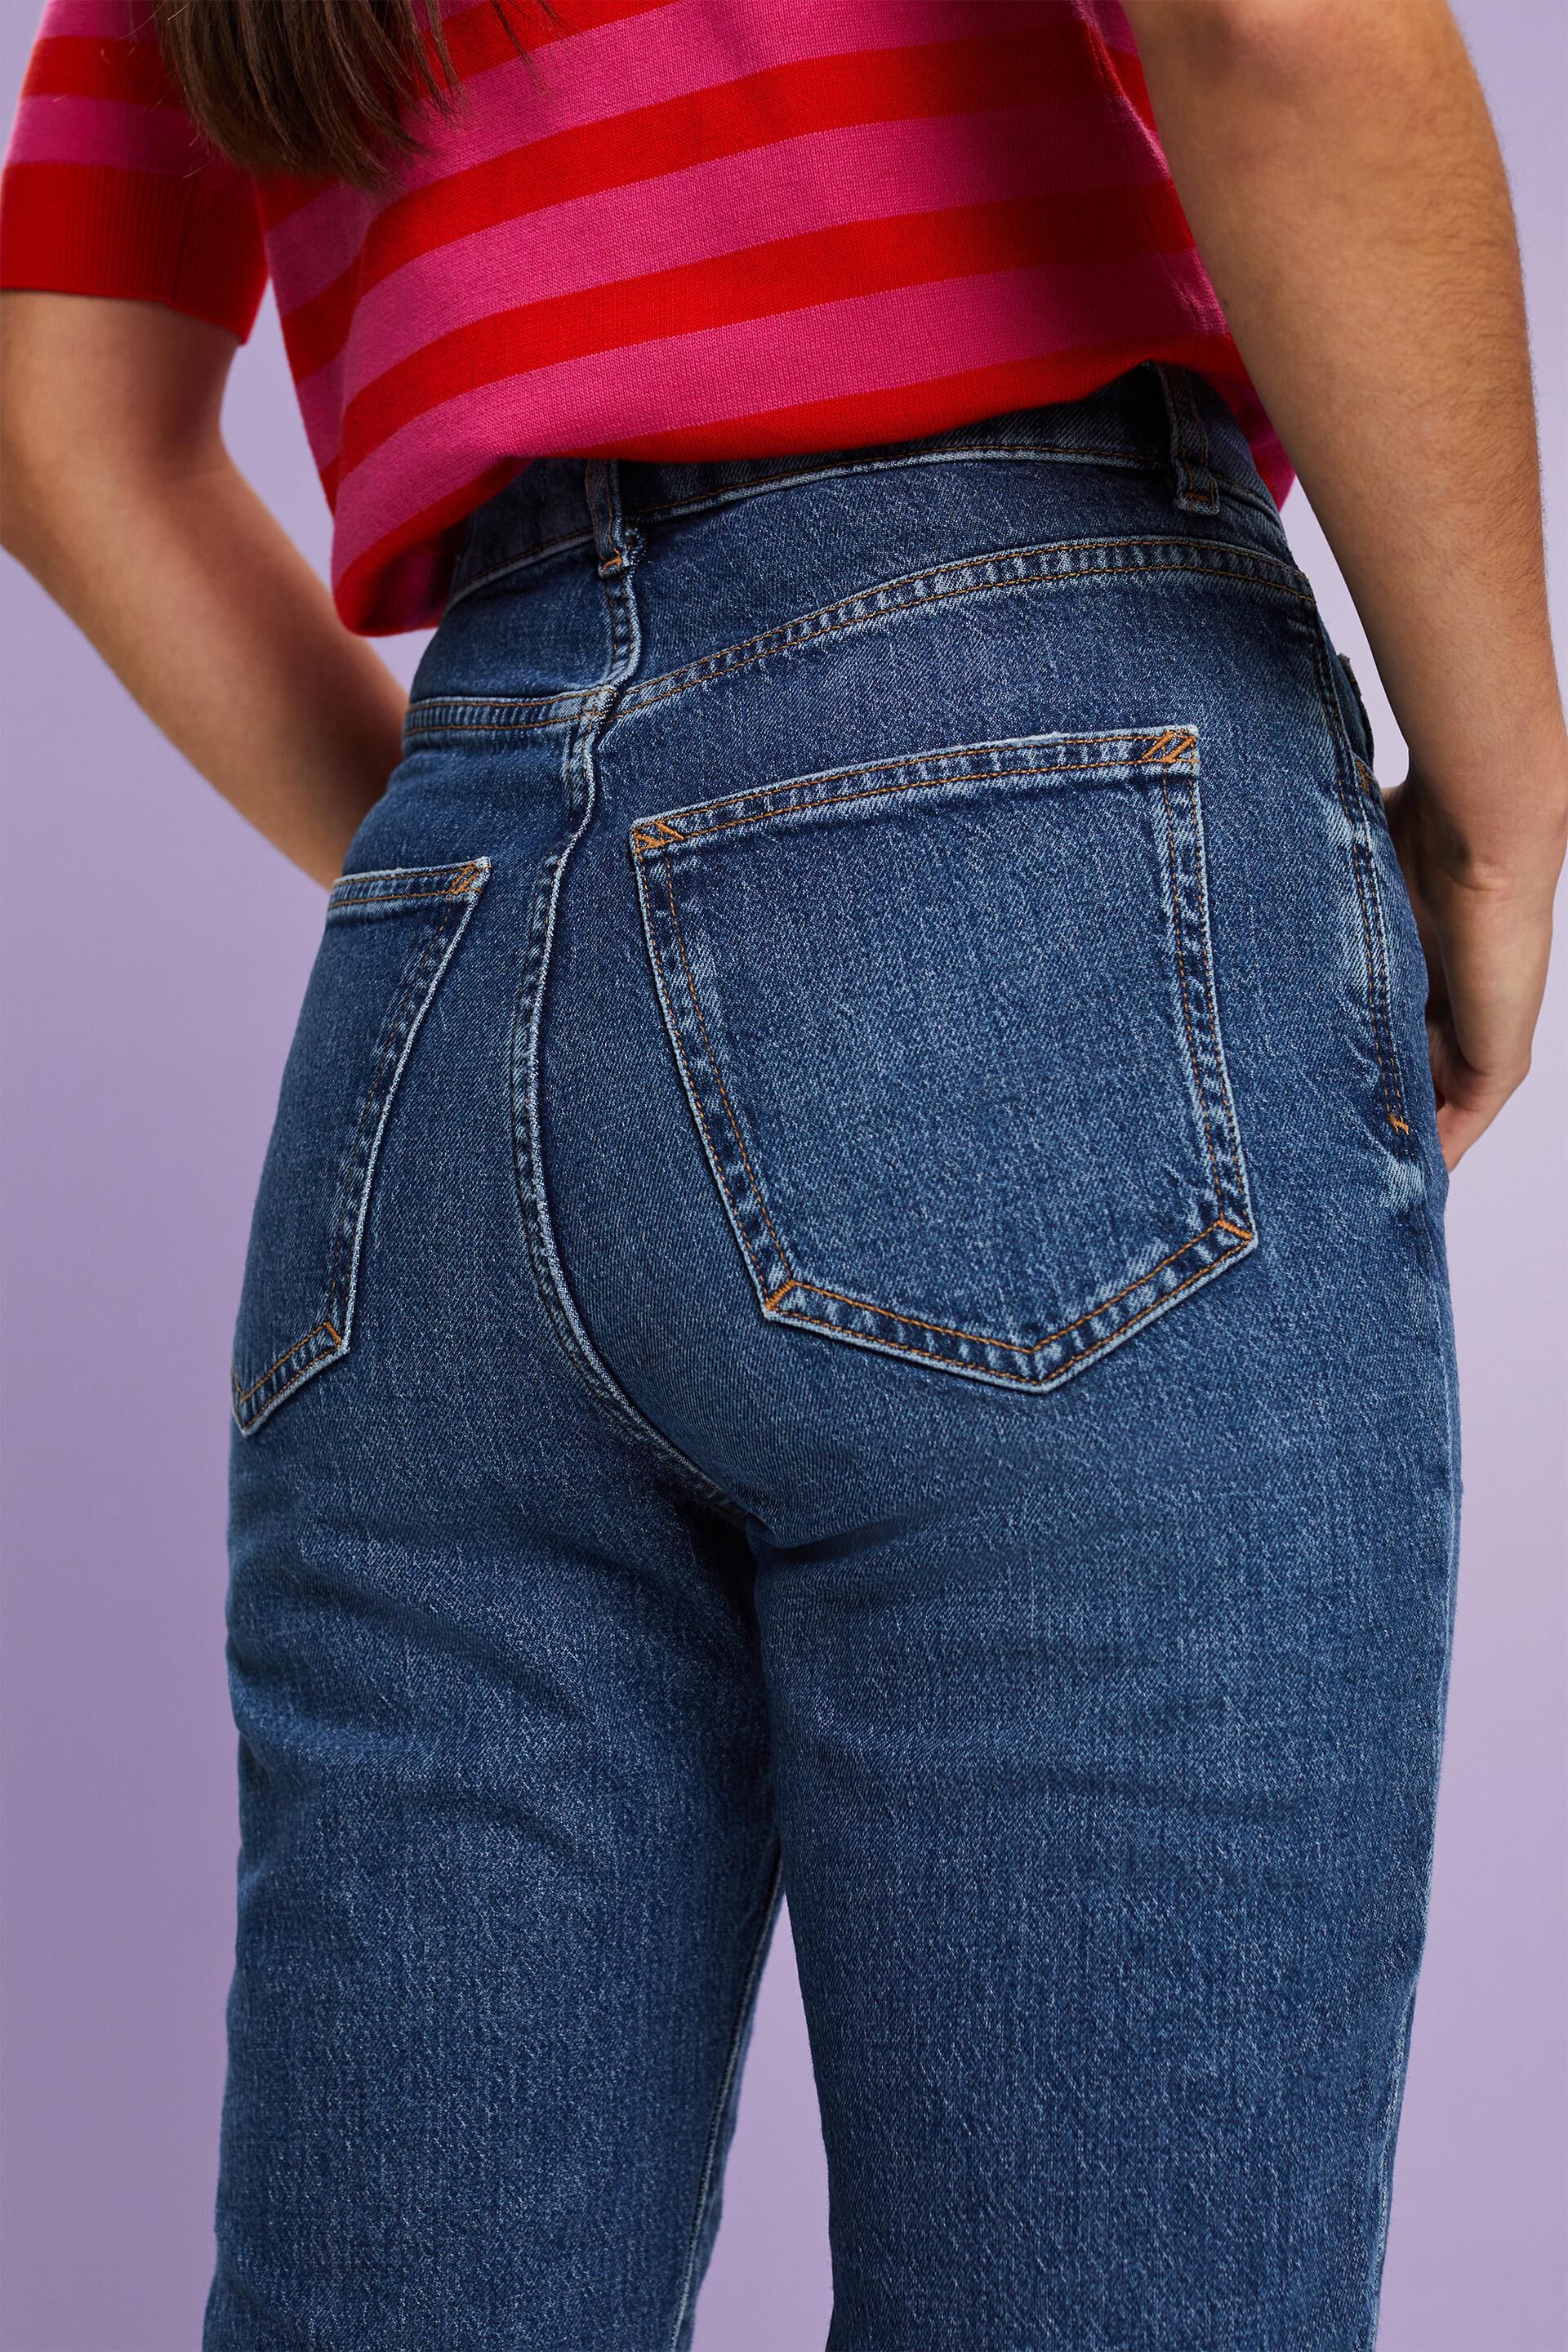 - Online ESPRIT ausgefranstem Super-High-Rise-Jeans in unserem Saum Shop mit